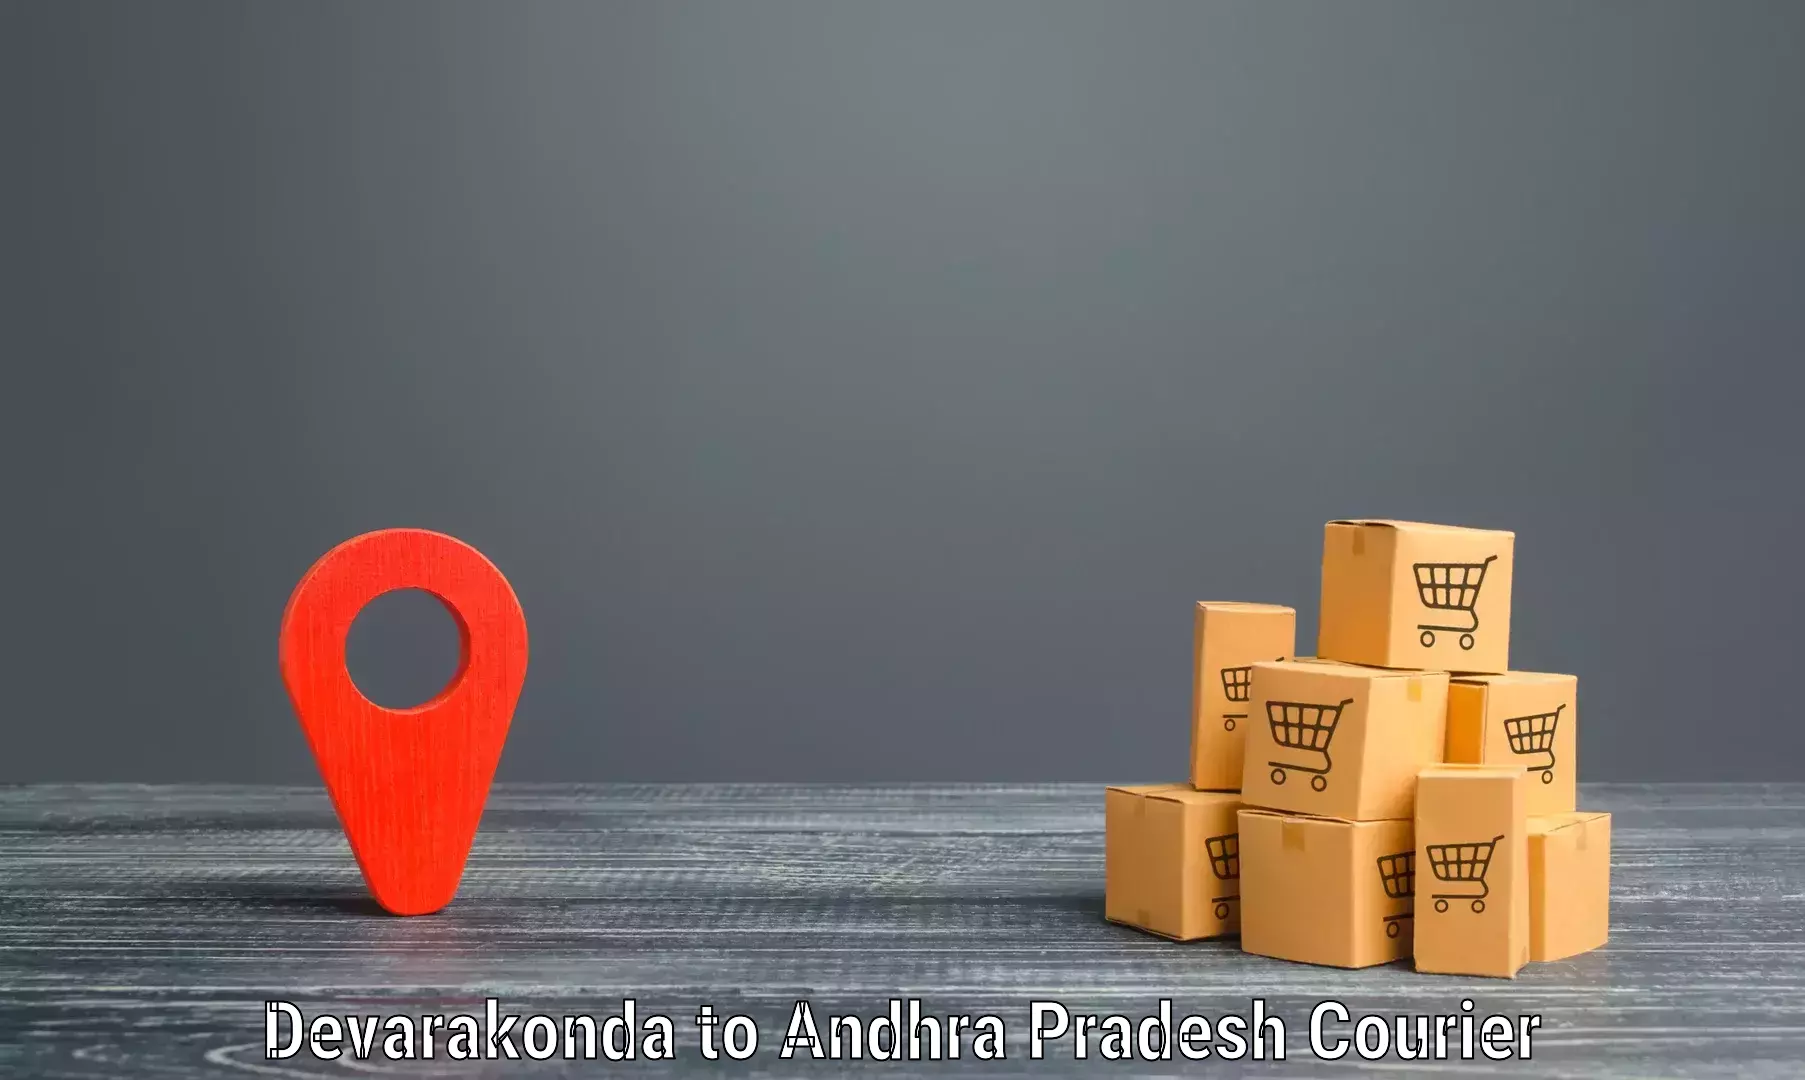 Reliable logistics providers Devarakonda to Rajahmundry